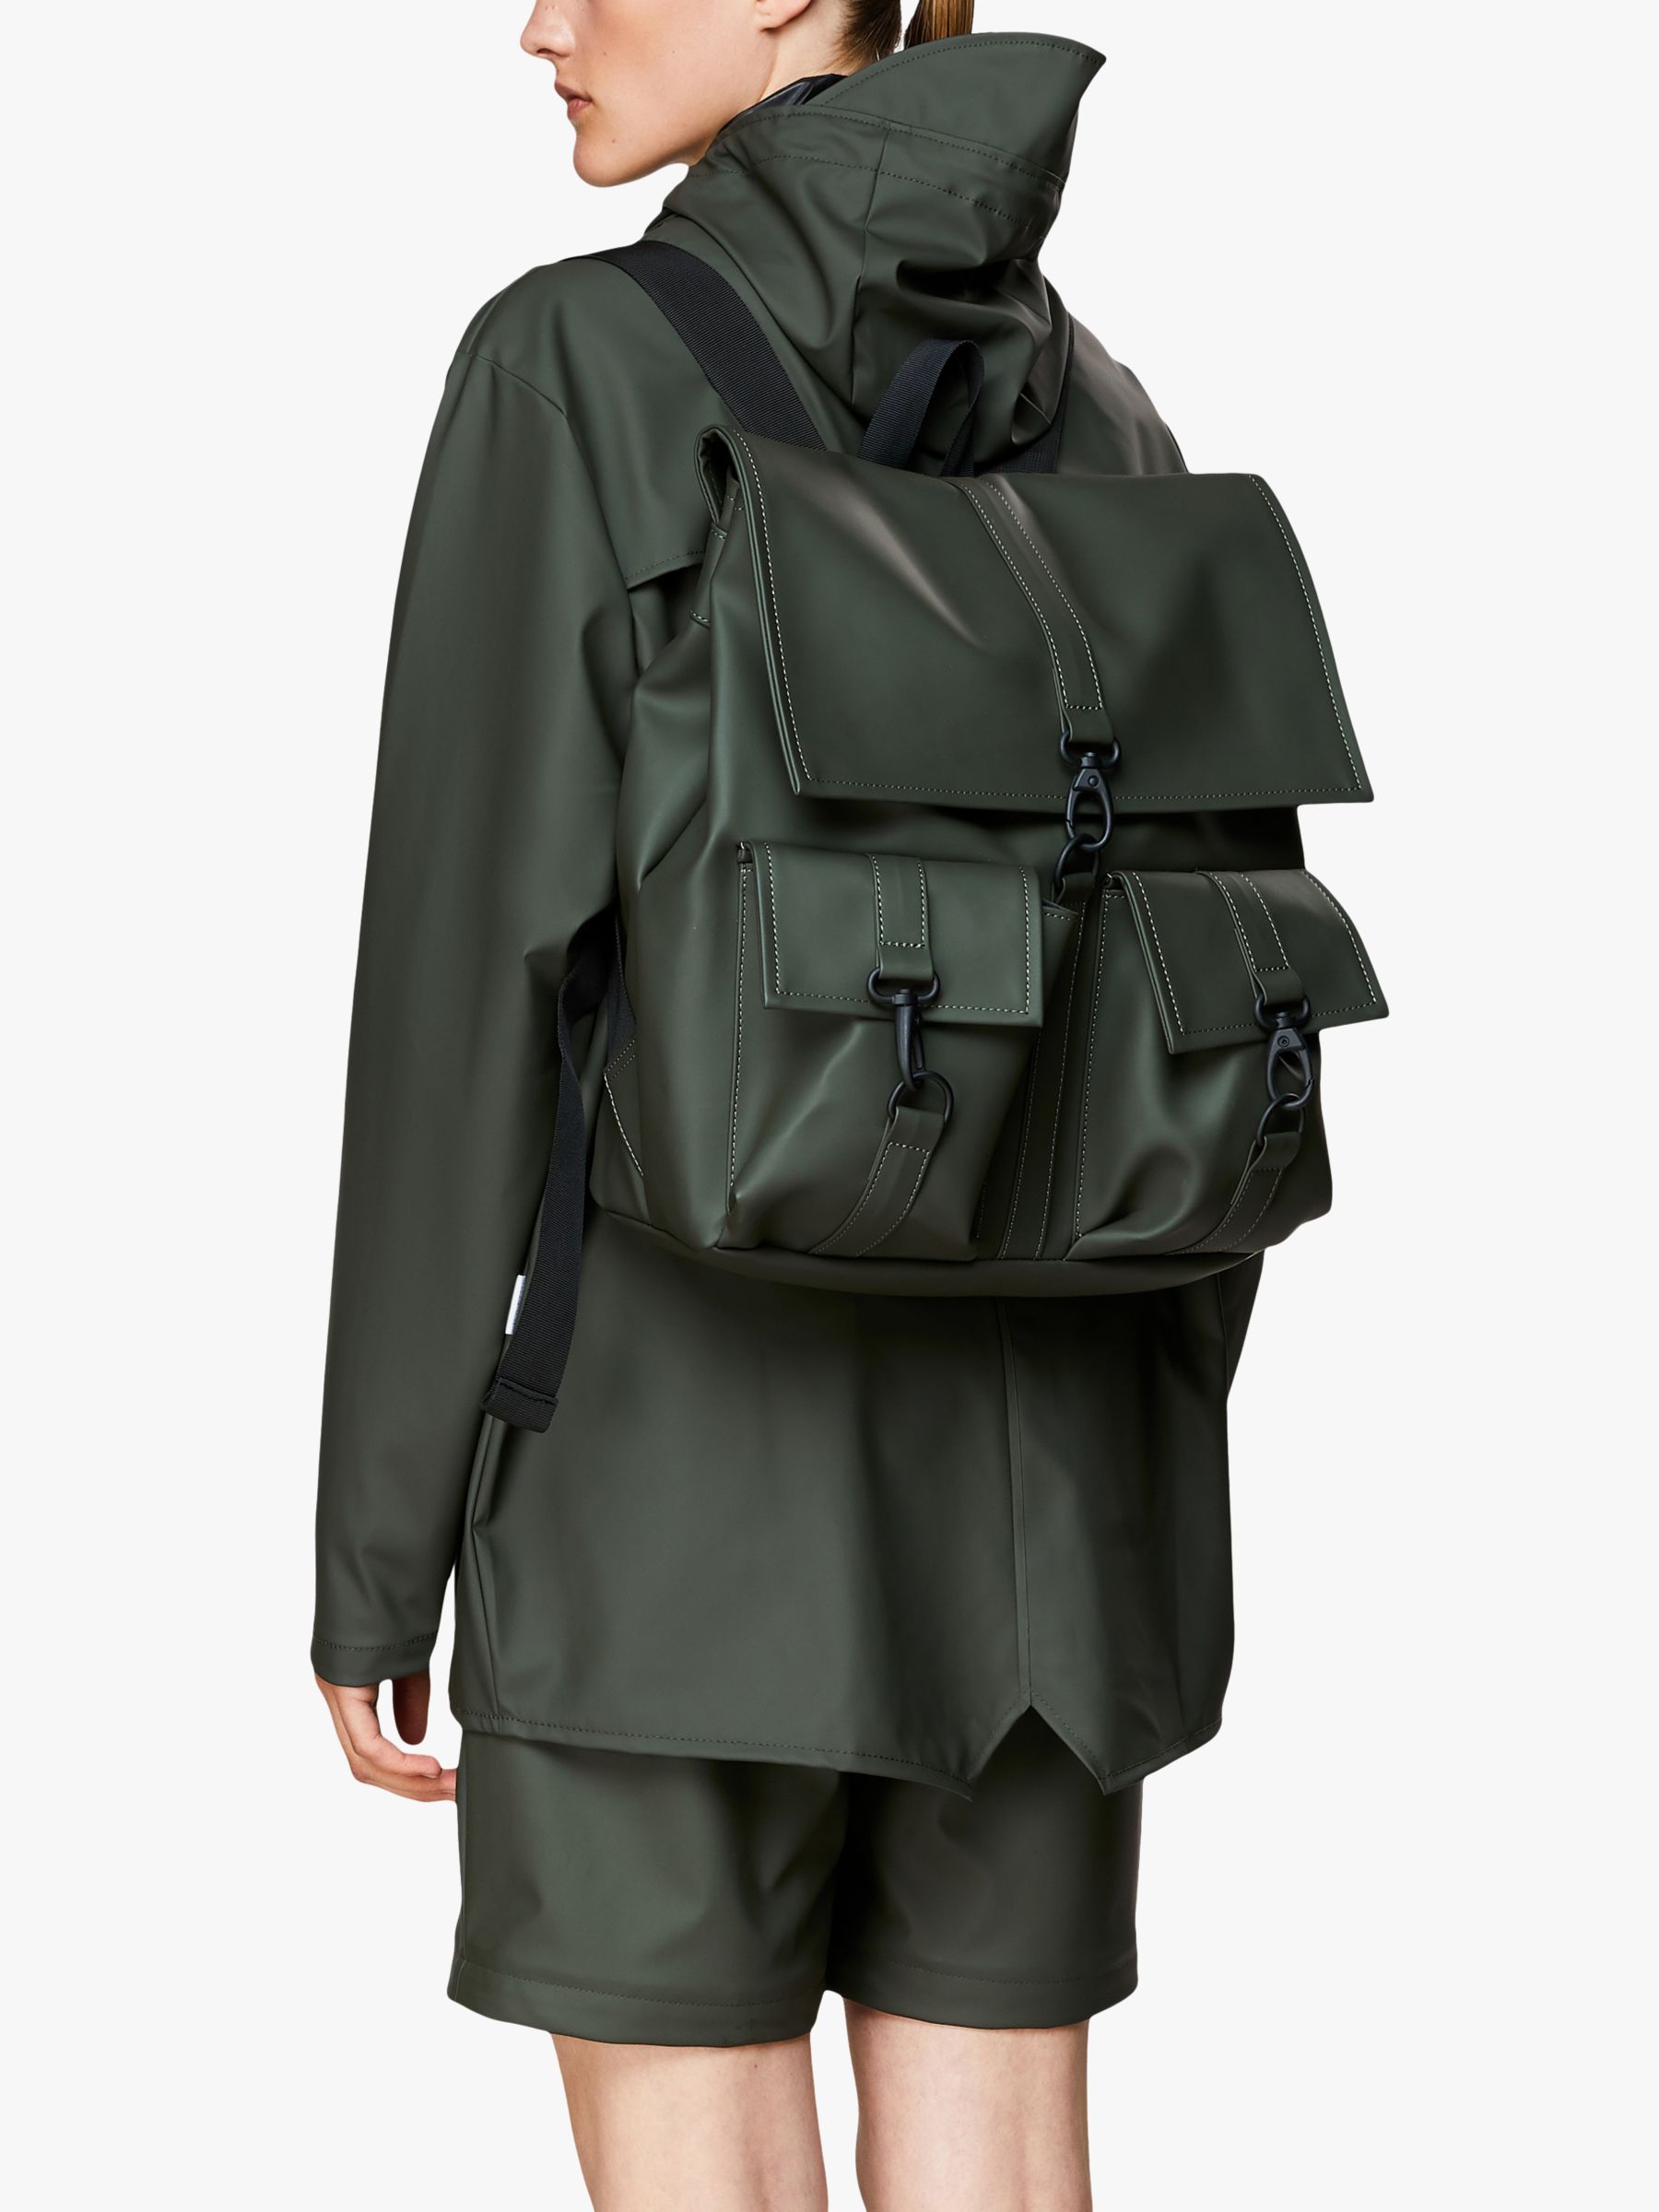 Rains MSN Waterproof Backpack,